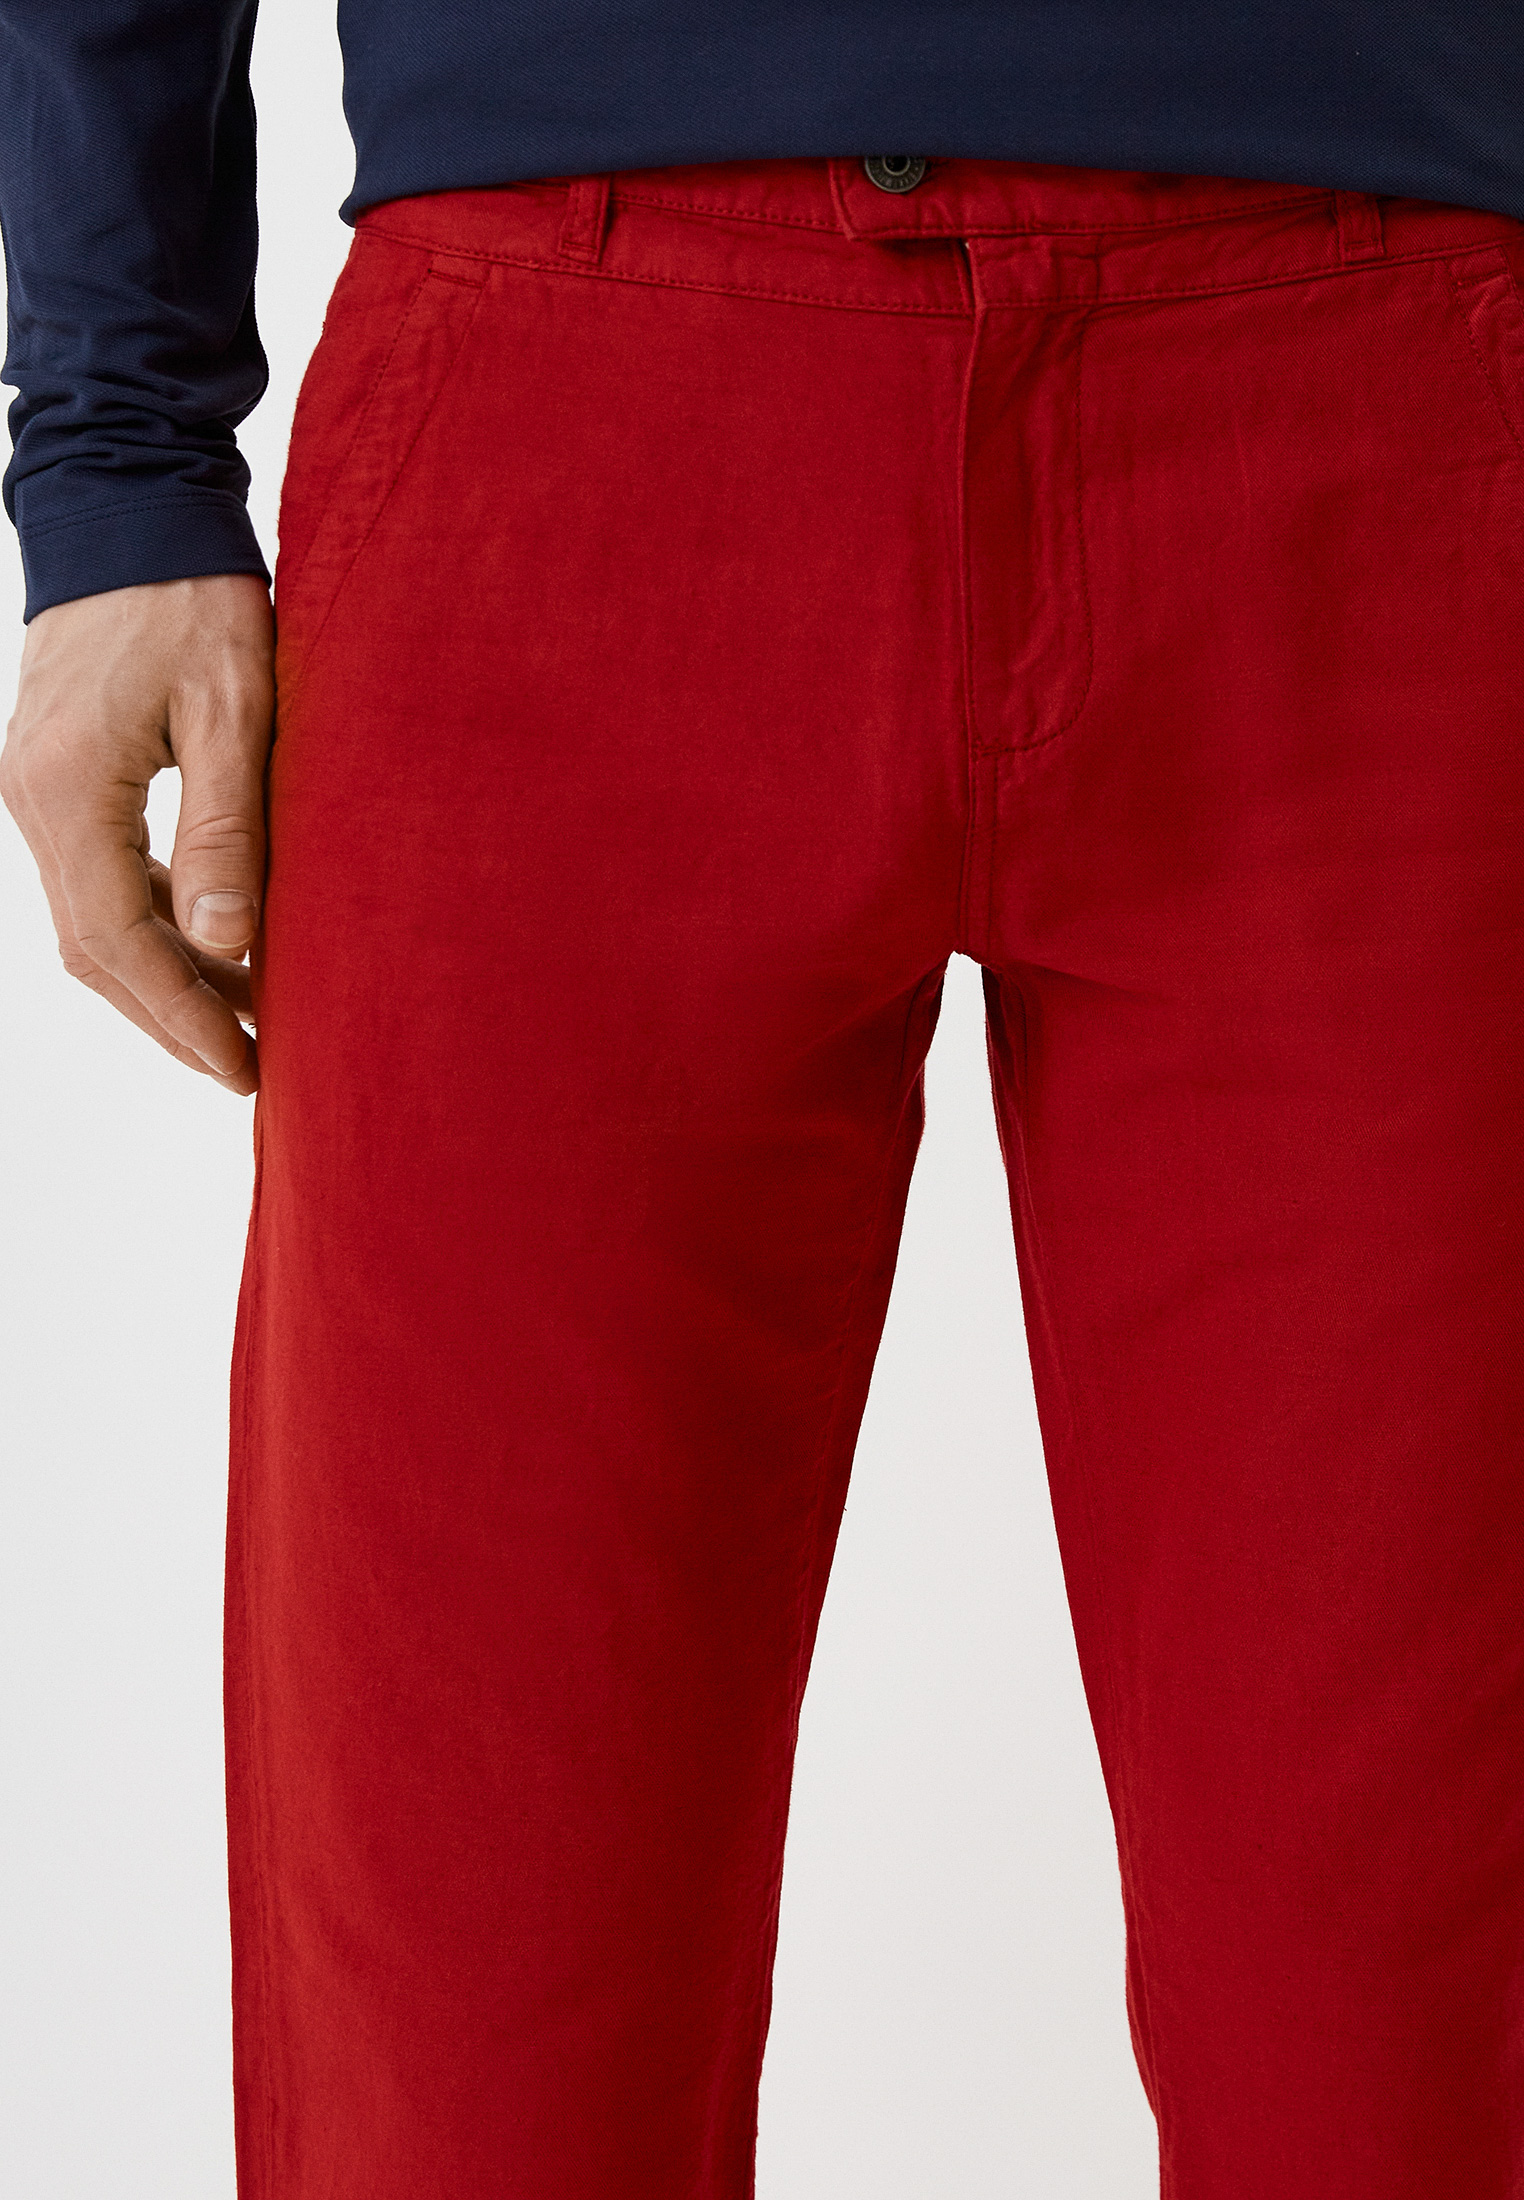 Мужские повседневные брюки Bikkembergs (Биккембергс) C P 112 00 T 9767: изображение 4